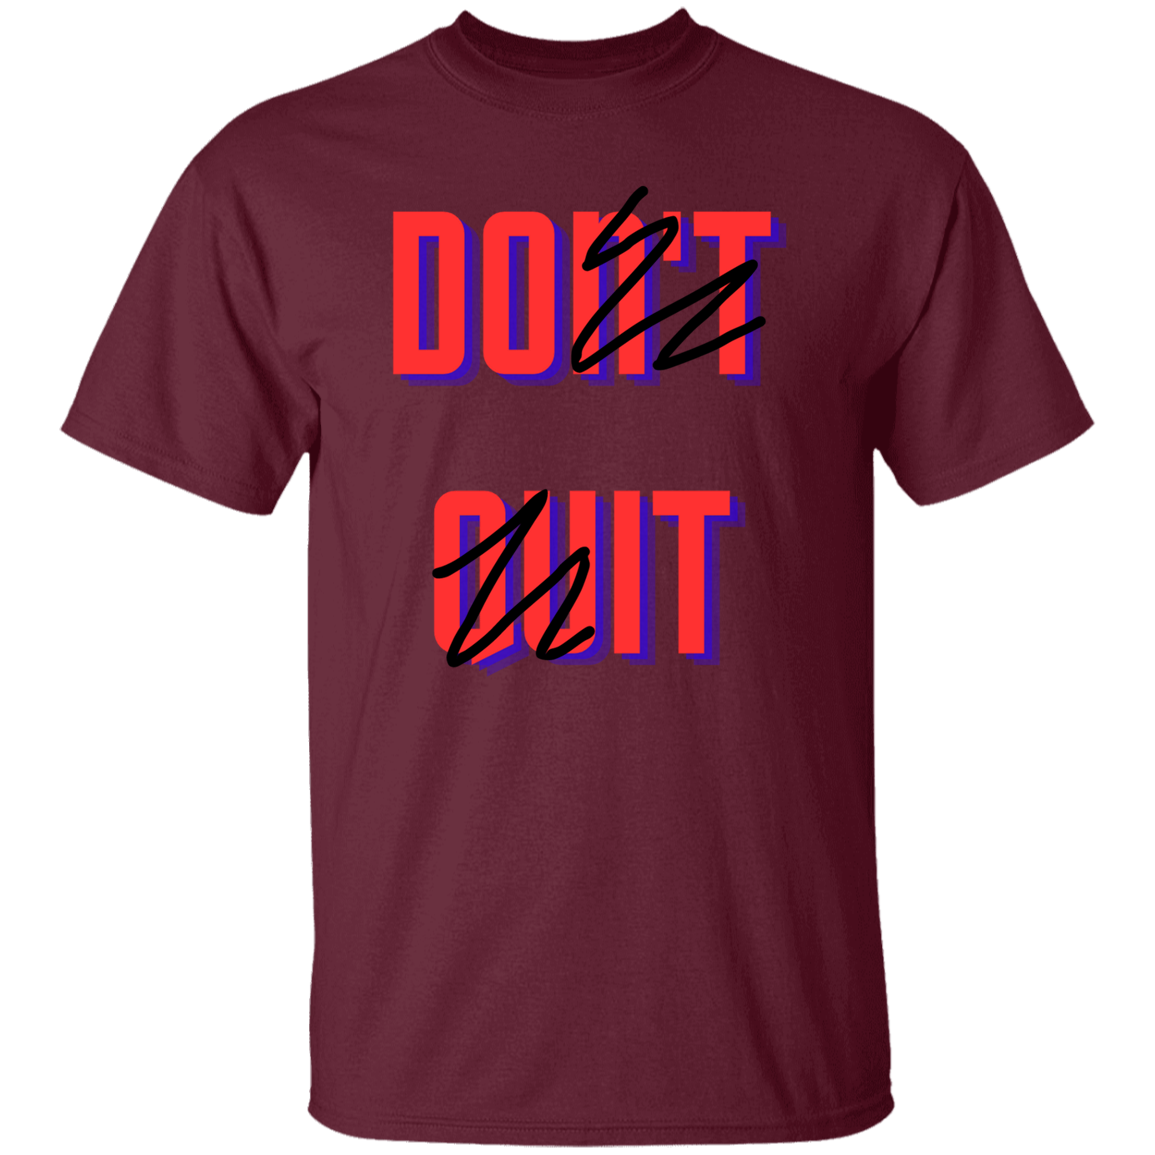 Don't Quit, Do It - Men's T-Shirt